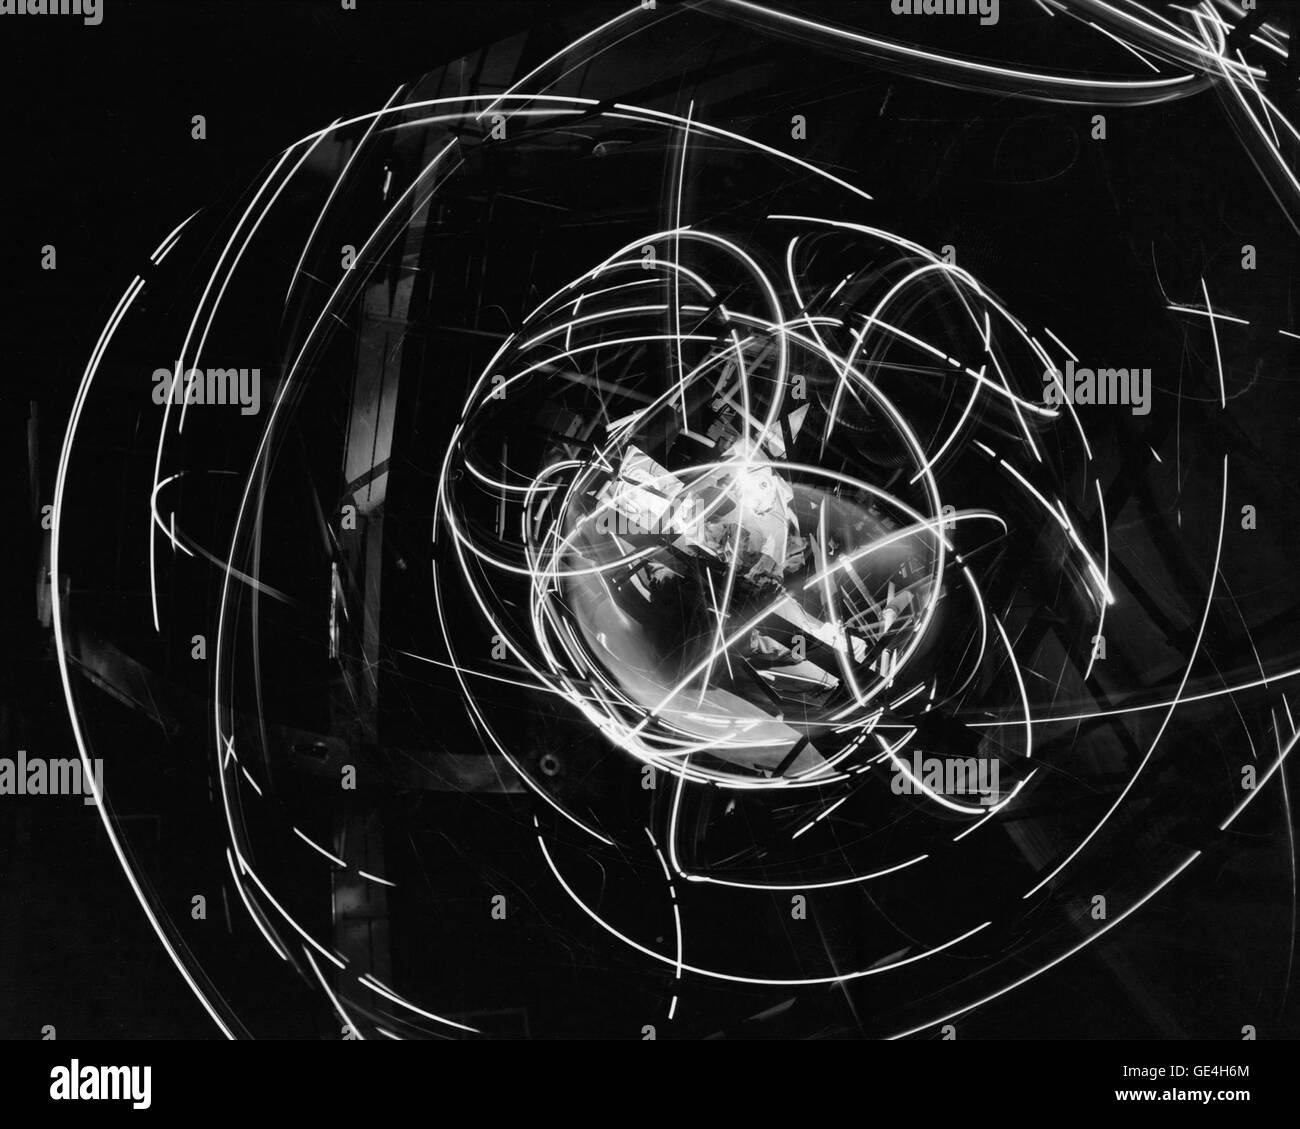 (16 dicembre 1959) di questo dispositivo è noto formalmente come MASTIF o più spazio asse di prova impianto di inerzia e si trova in altitudine galleria del vento. Fu costruito al Lewis Research Center, ora John H. Glenn Research Center e progettato per addestrare gli astronauti di riacquistare il controllo di un veicolo spaziale di barilatura. Immagine # : C1959-52233 Foto Stock